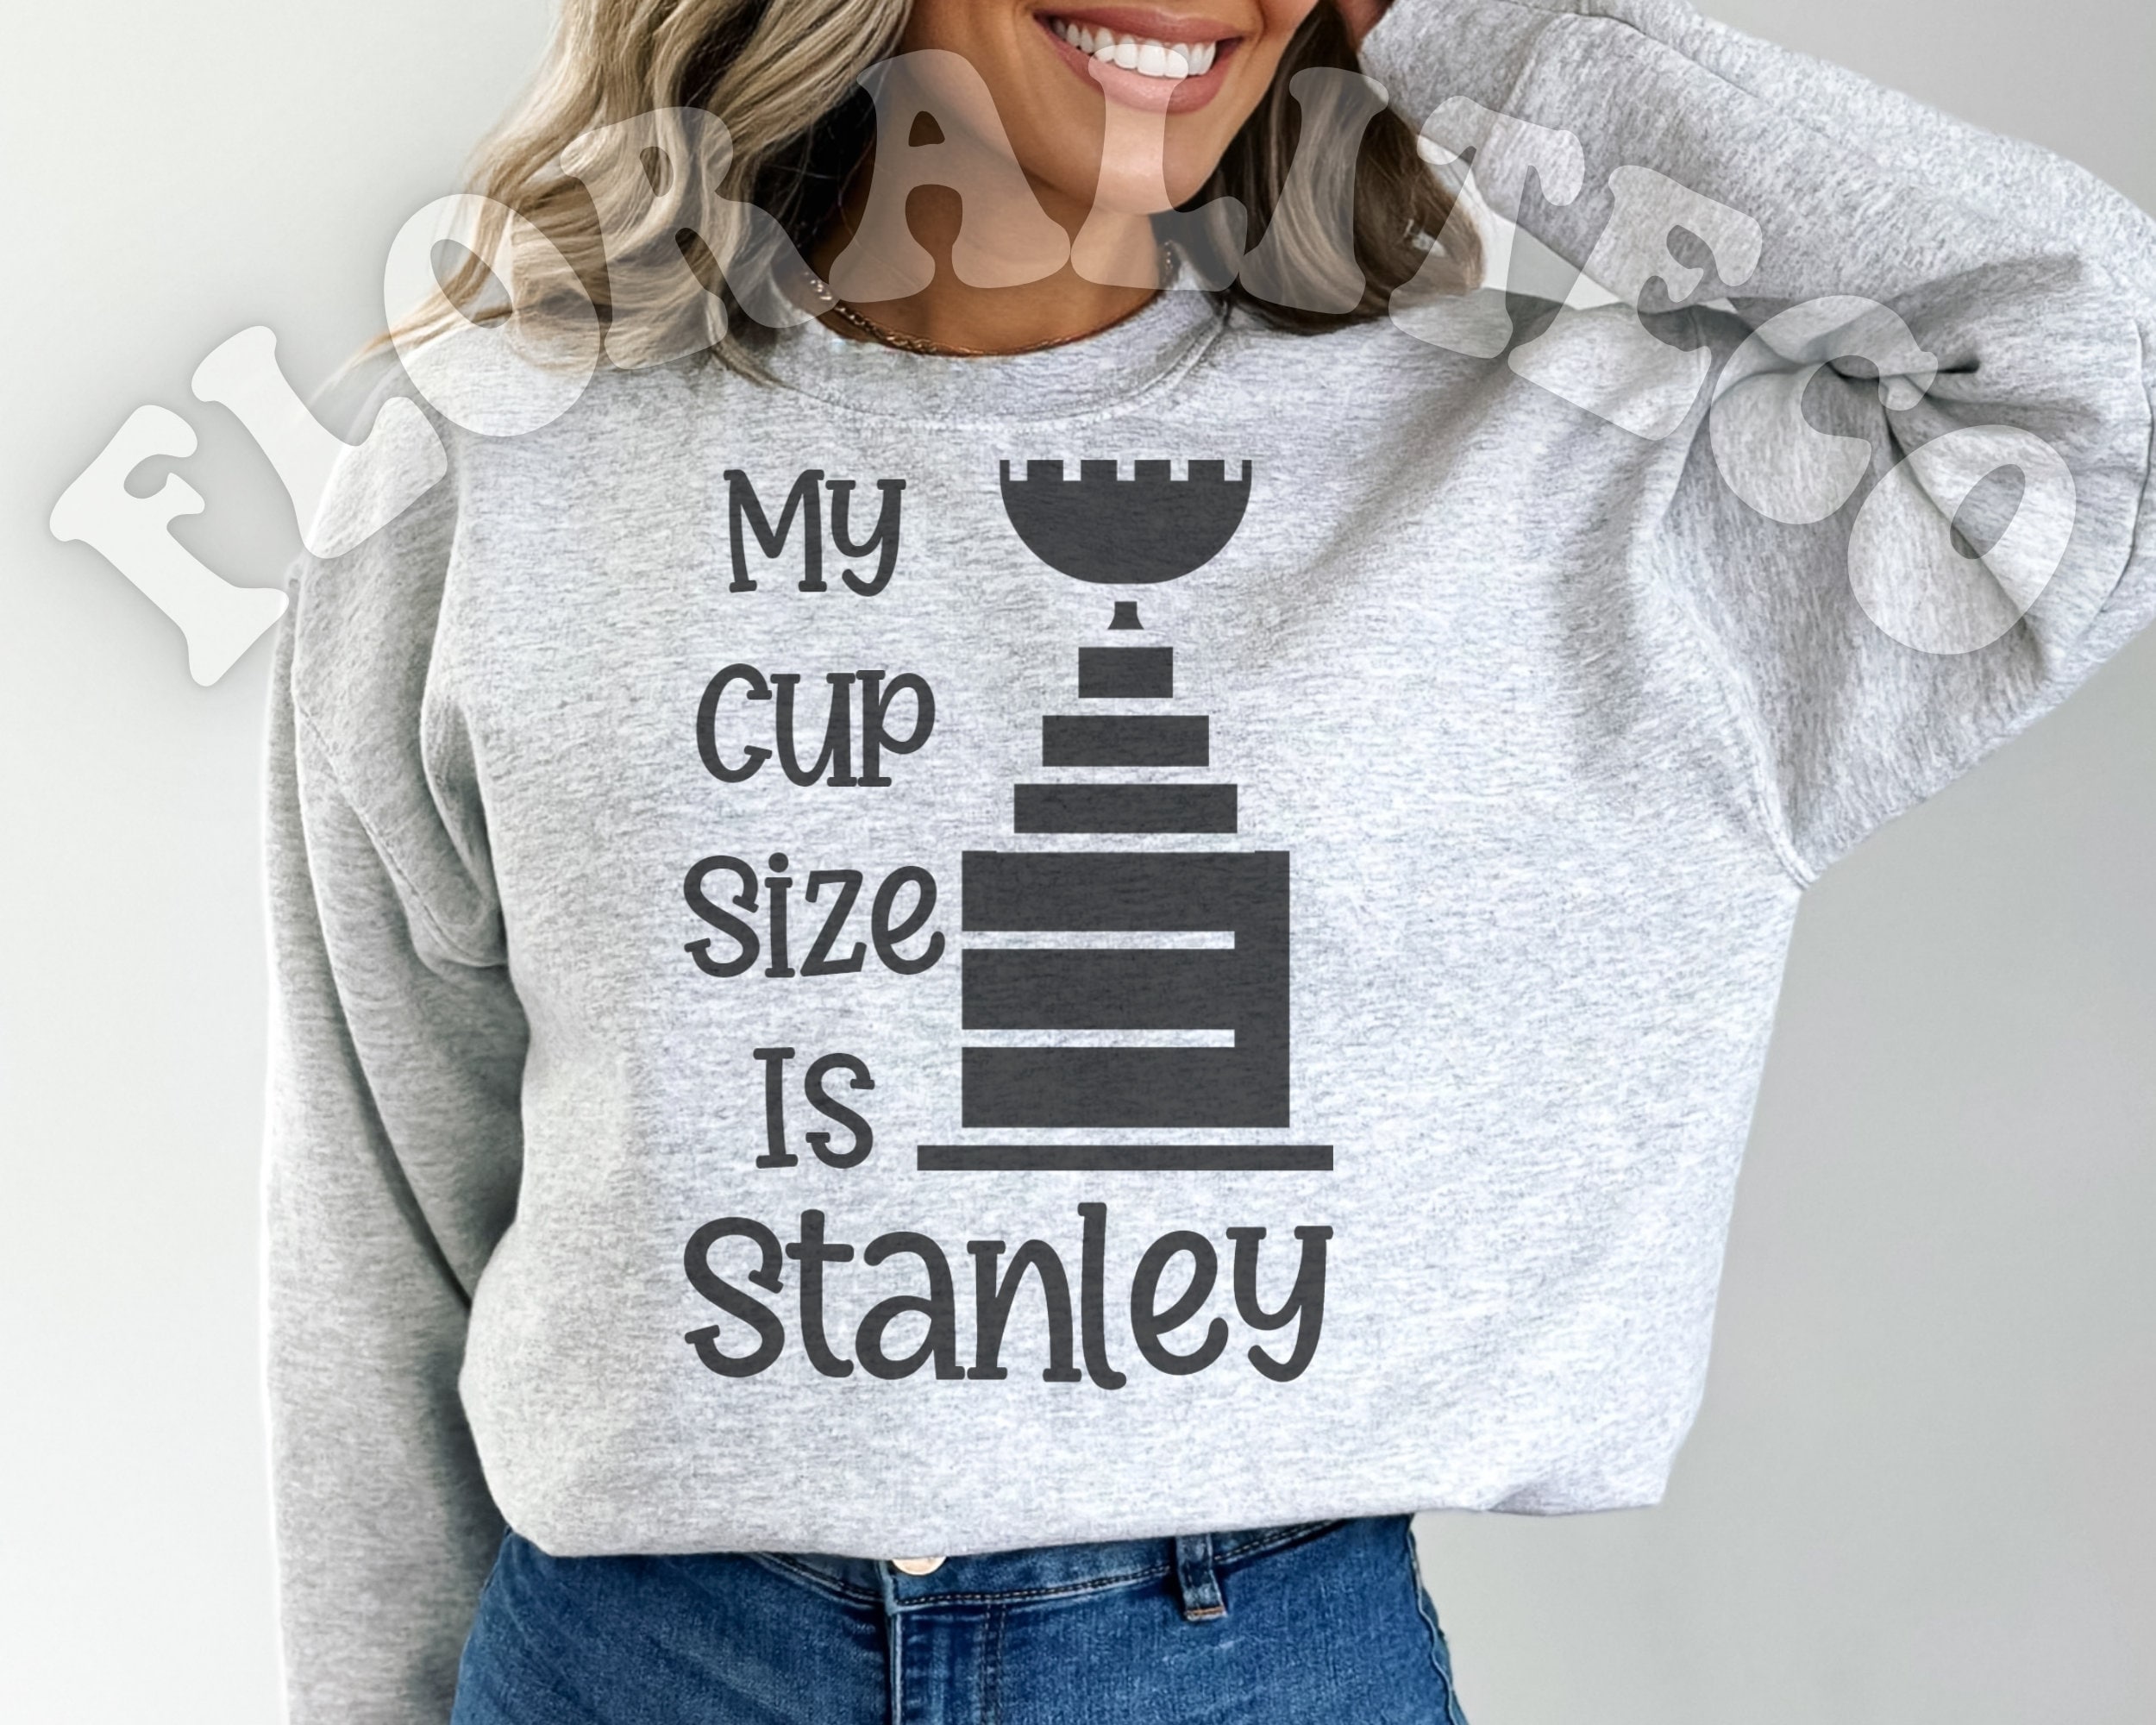 My Cup Size is Stanley LA Kings Women's T-Shirt – The Junkyard